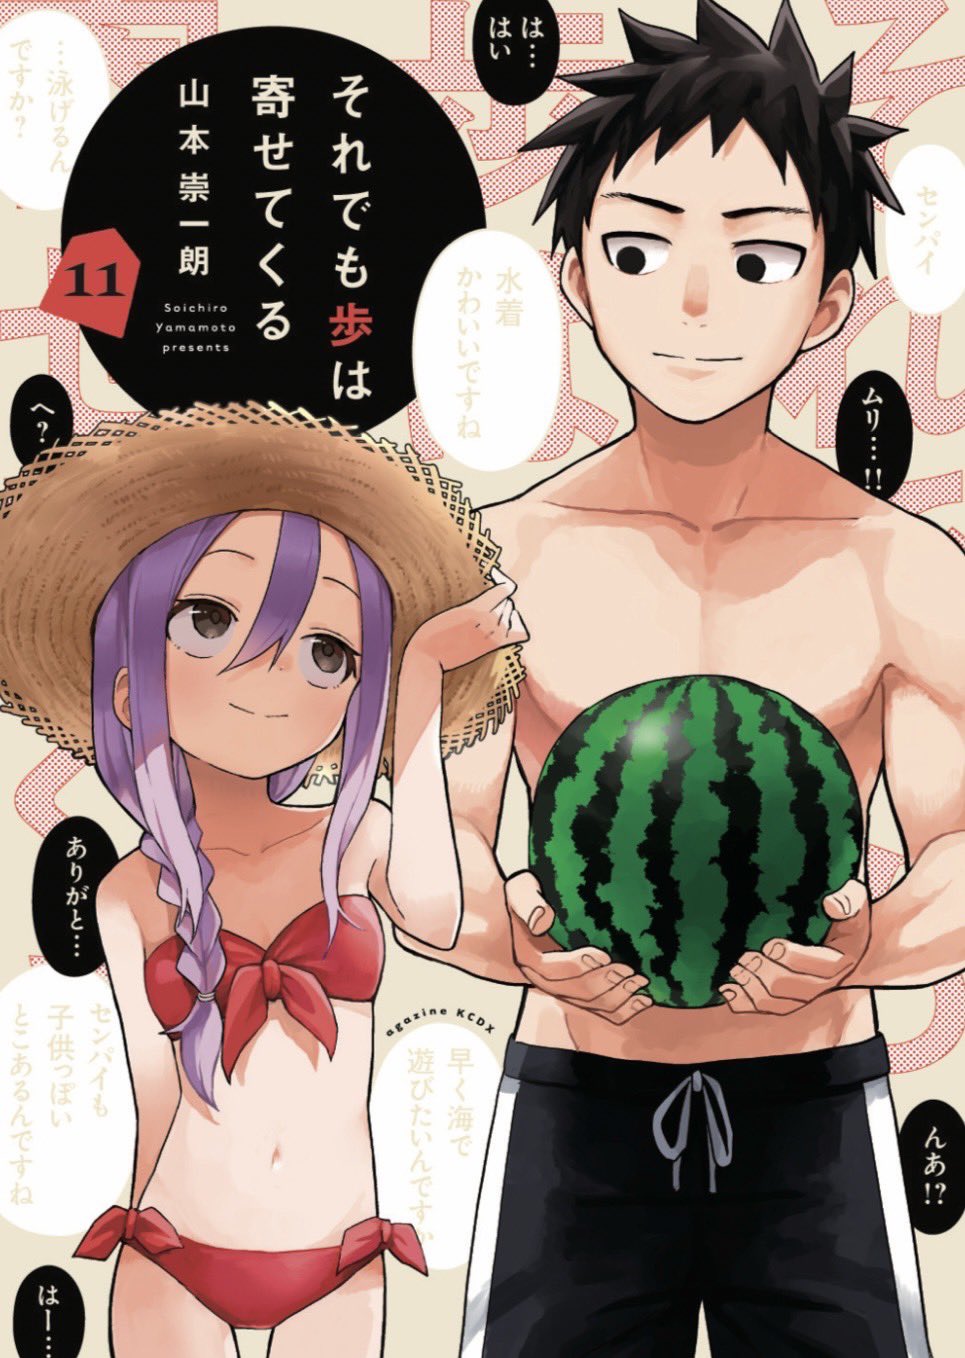 Read Soredemo Ayumu wa Yosetekuru Manga English [New Chapters